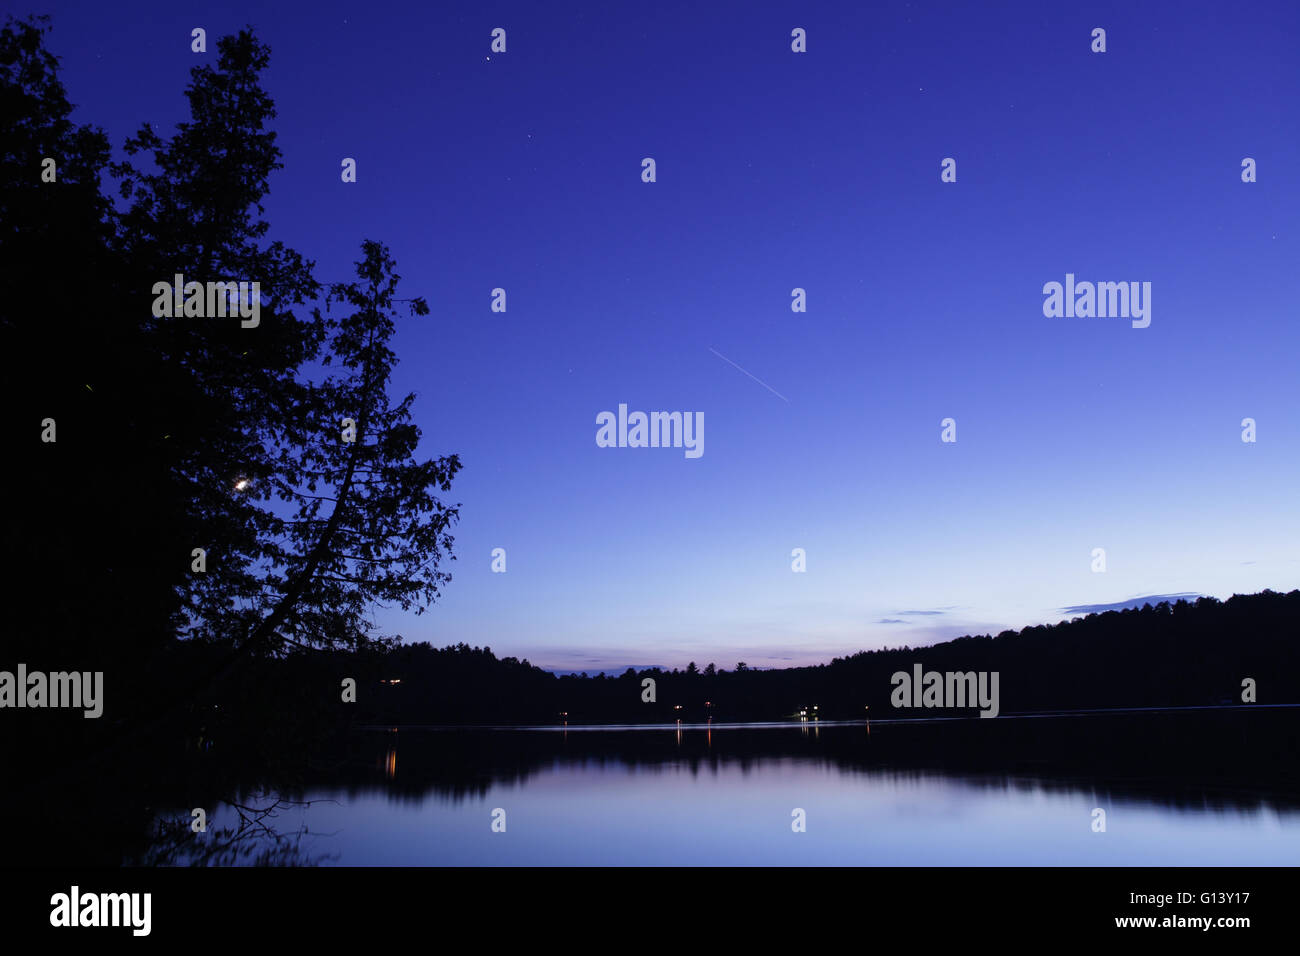 Paesaggio notturno su un lago in Western Vermont a stella con sentieri e una lunga scia di luce dalla ISS stazione spaziale. Foto Stock